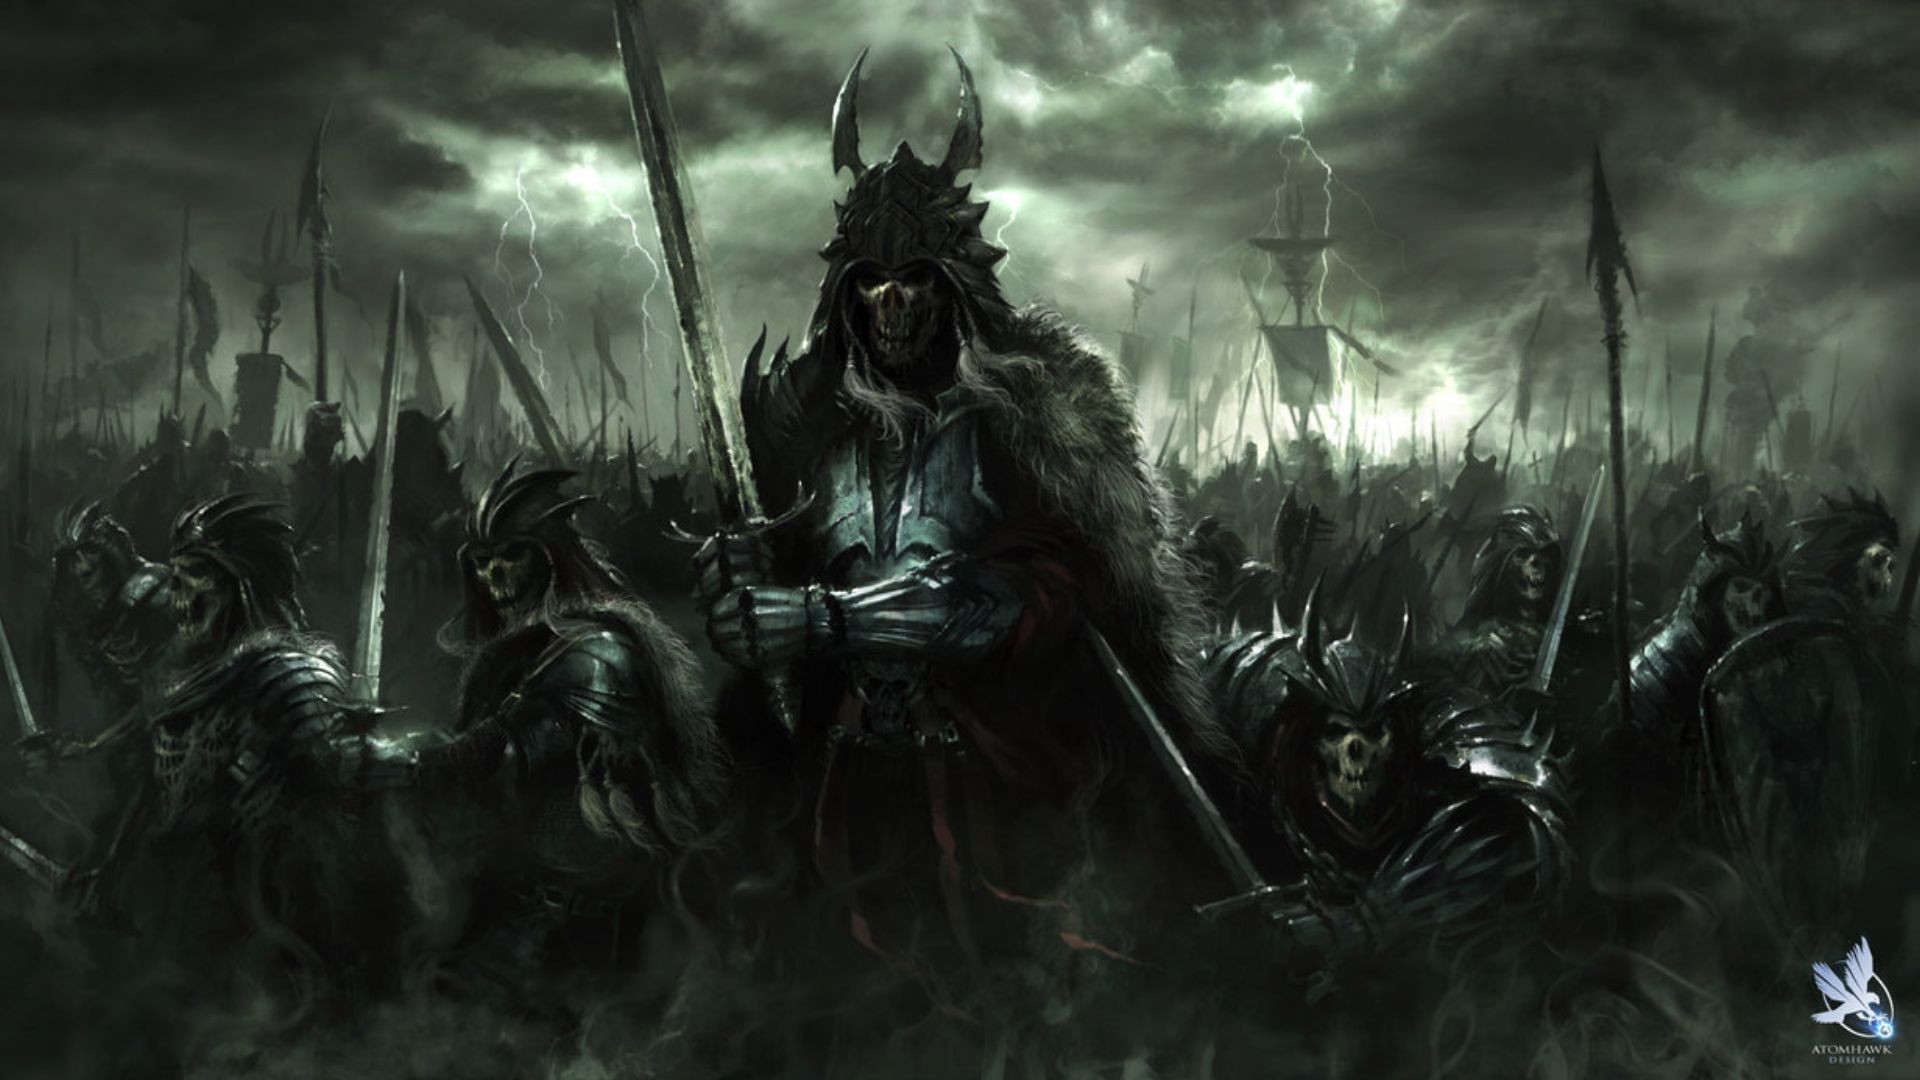 Dark art fantasy art dark horror demon skull warrior wepons army wallpaper